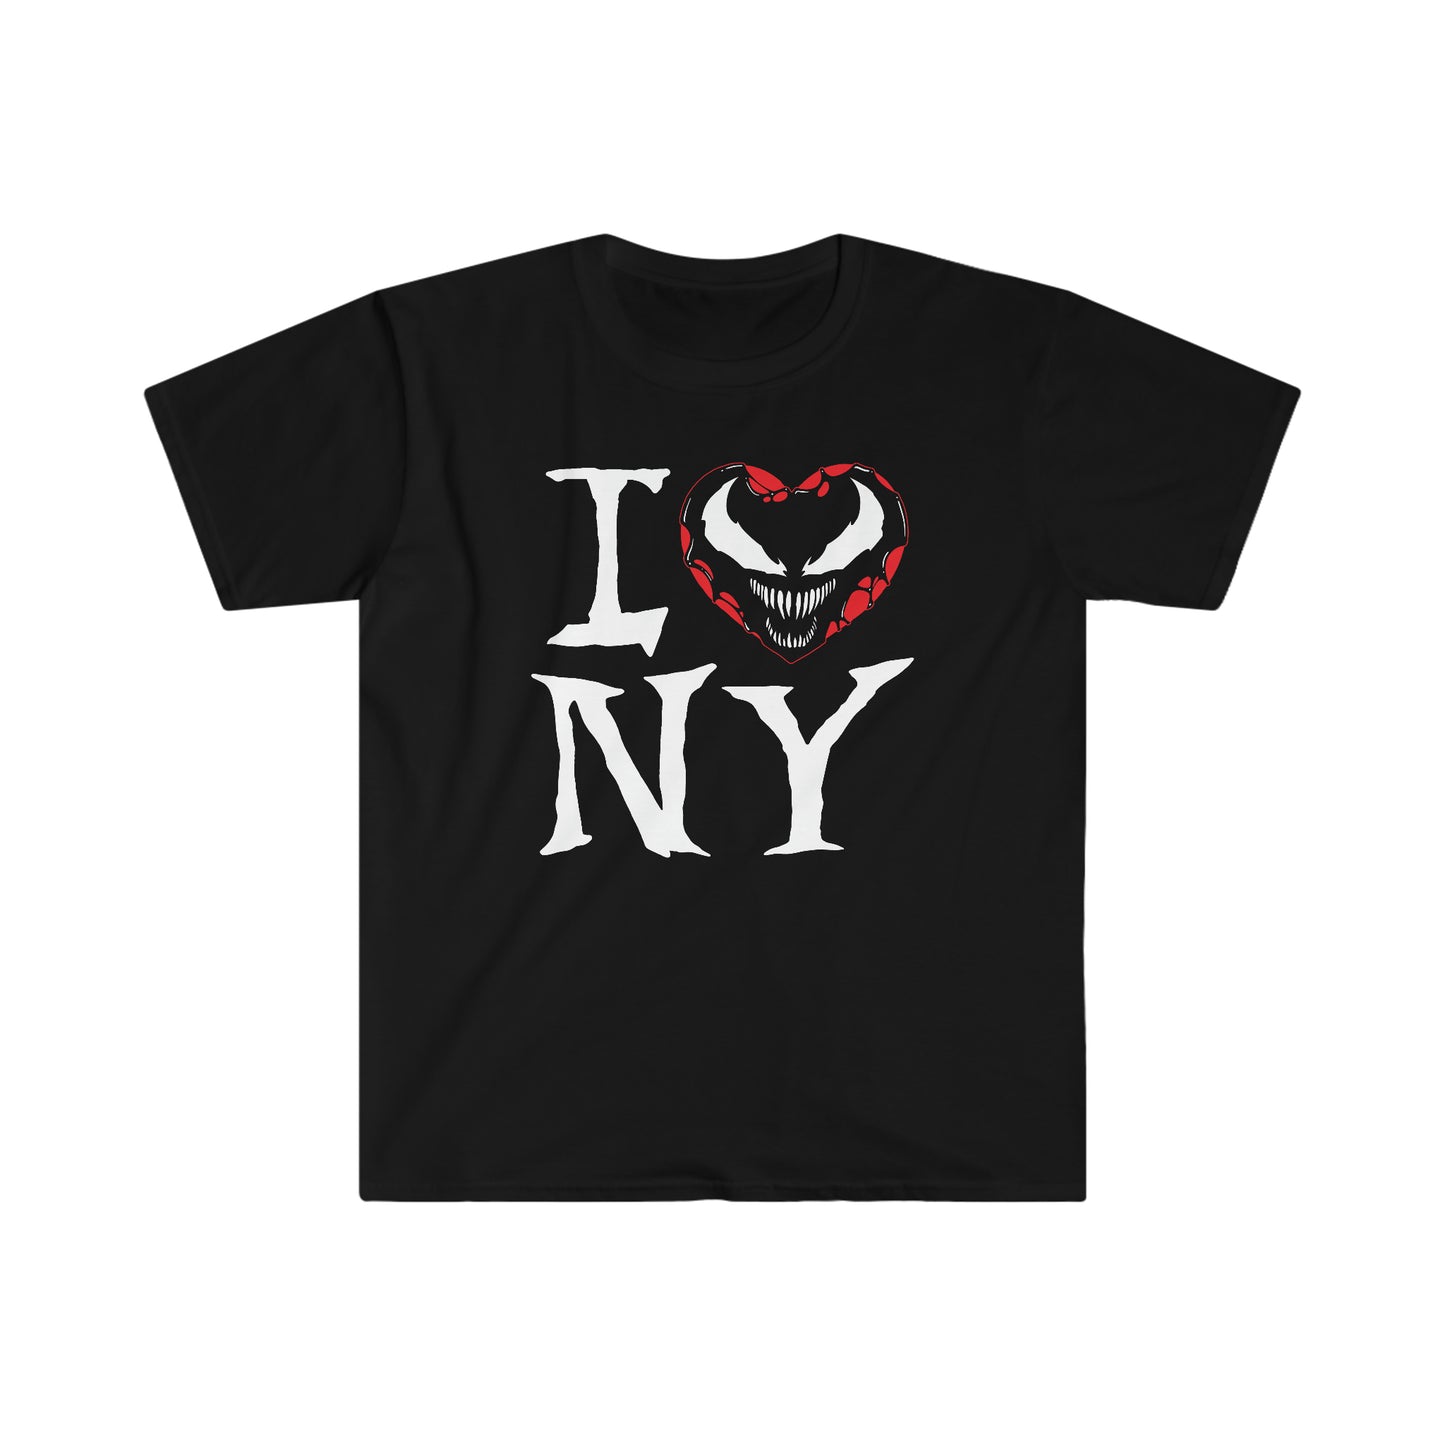 I Symbiote NY t-shirt